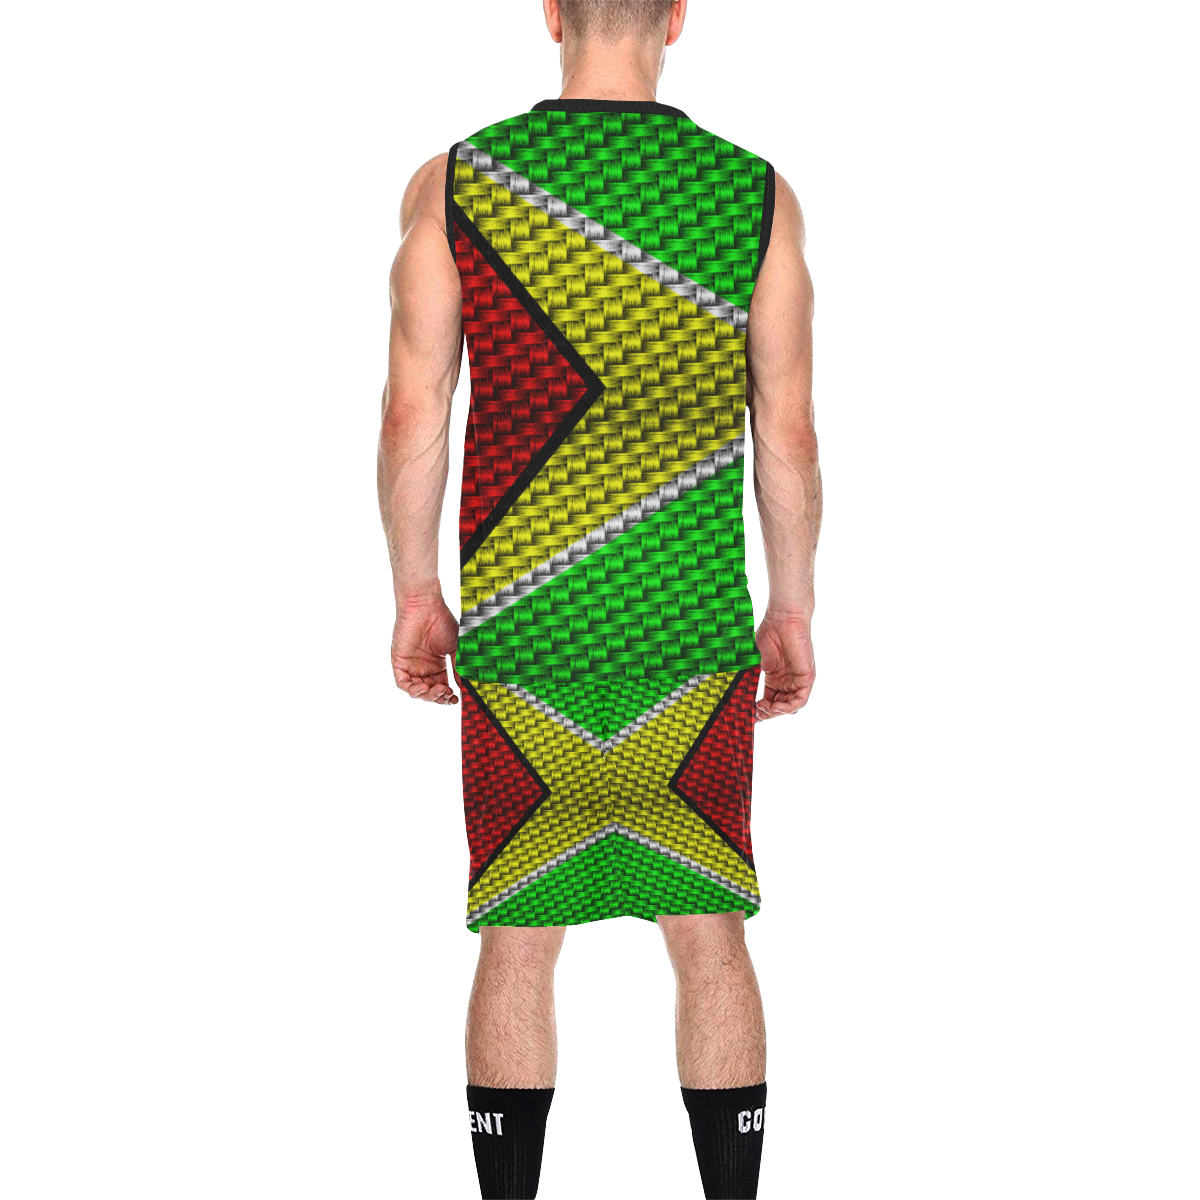 GUYANA All Over Print Basketball Uniform